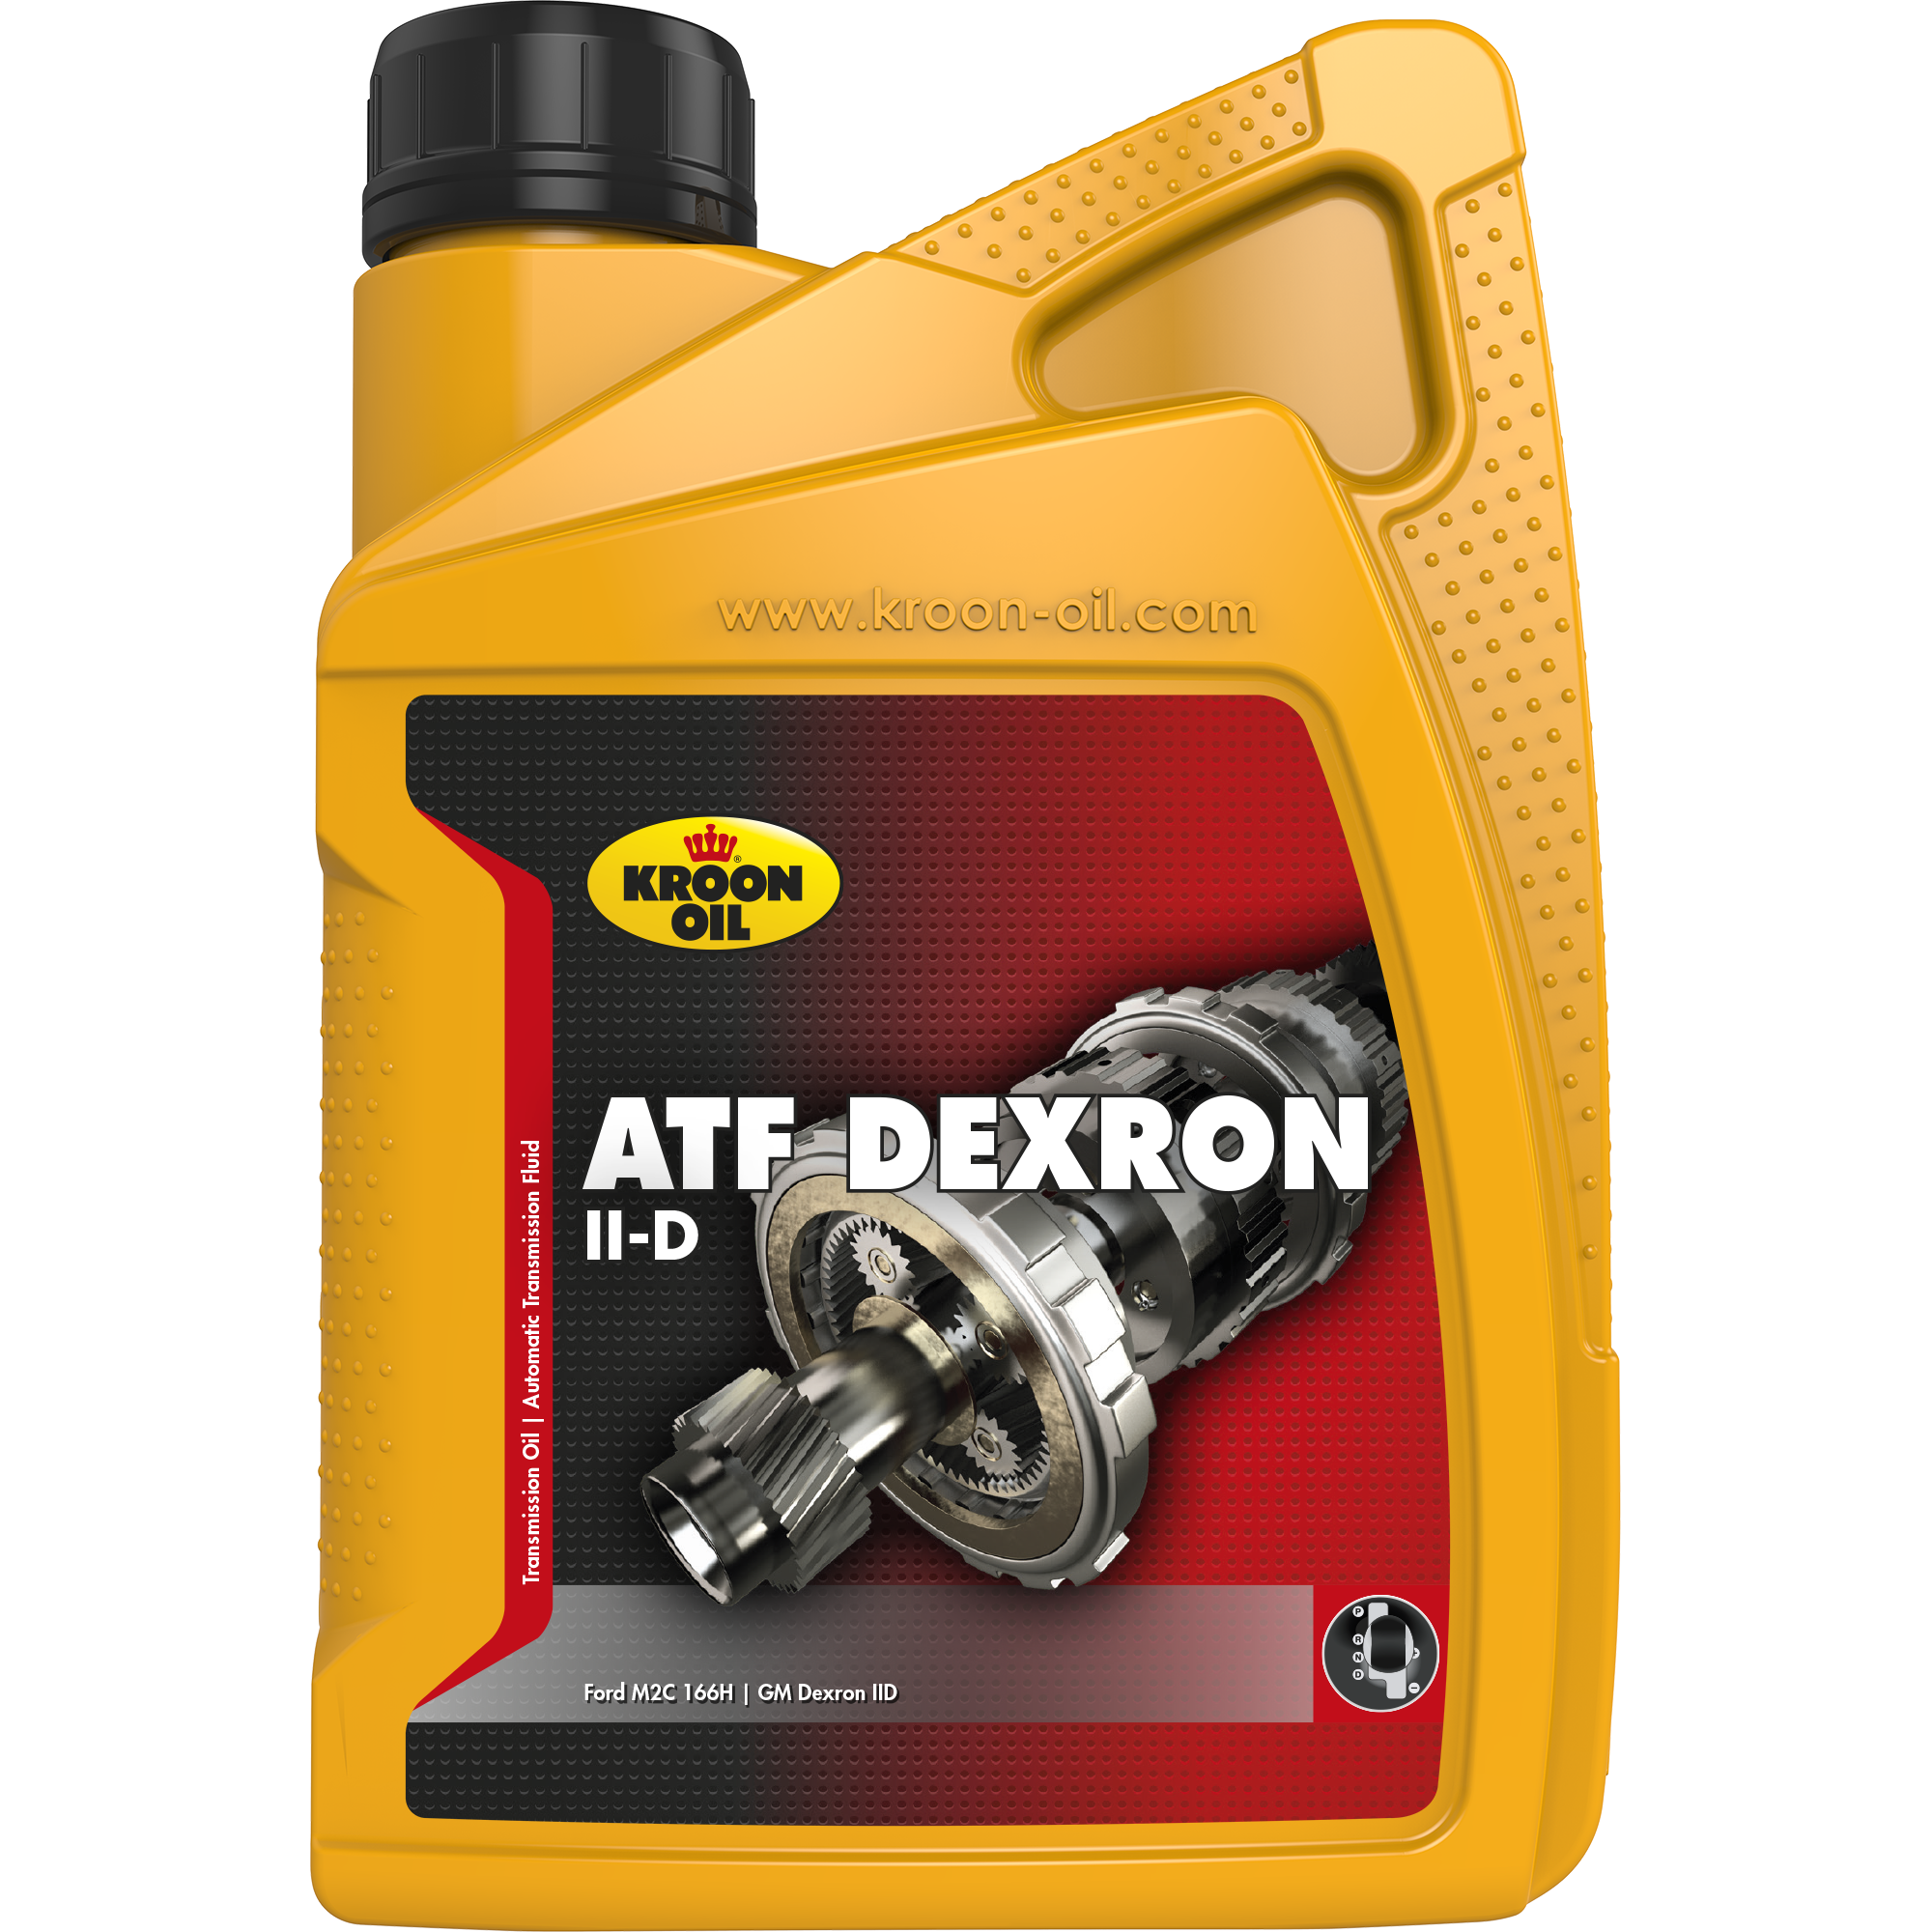 Kroon-Oil ATF Dexron II-D, 12 x 1 lt detail 2